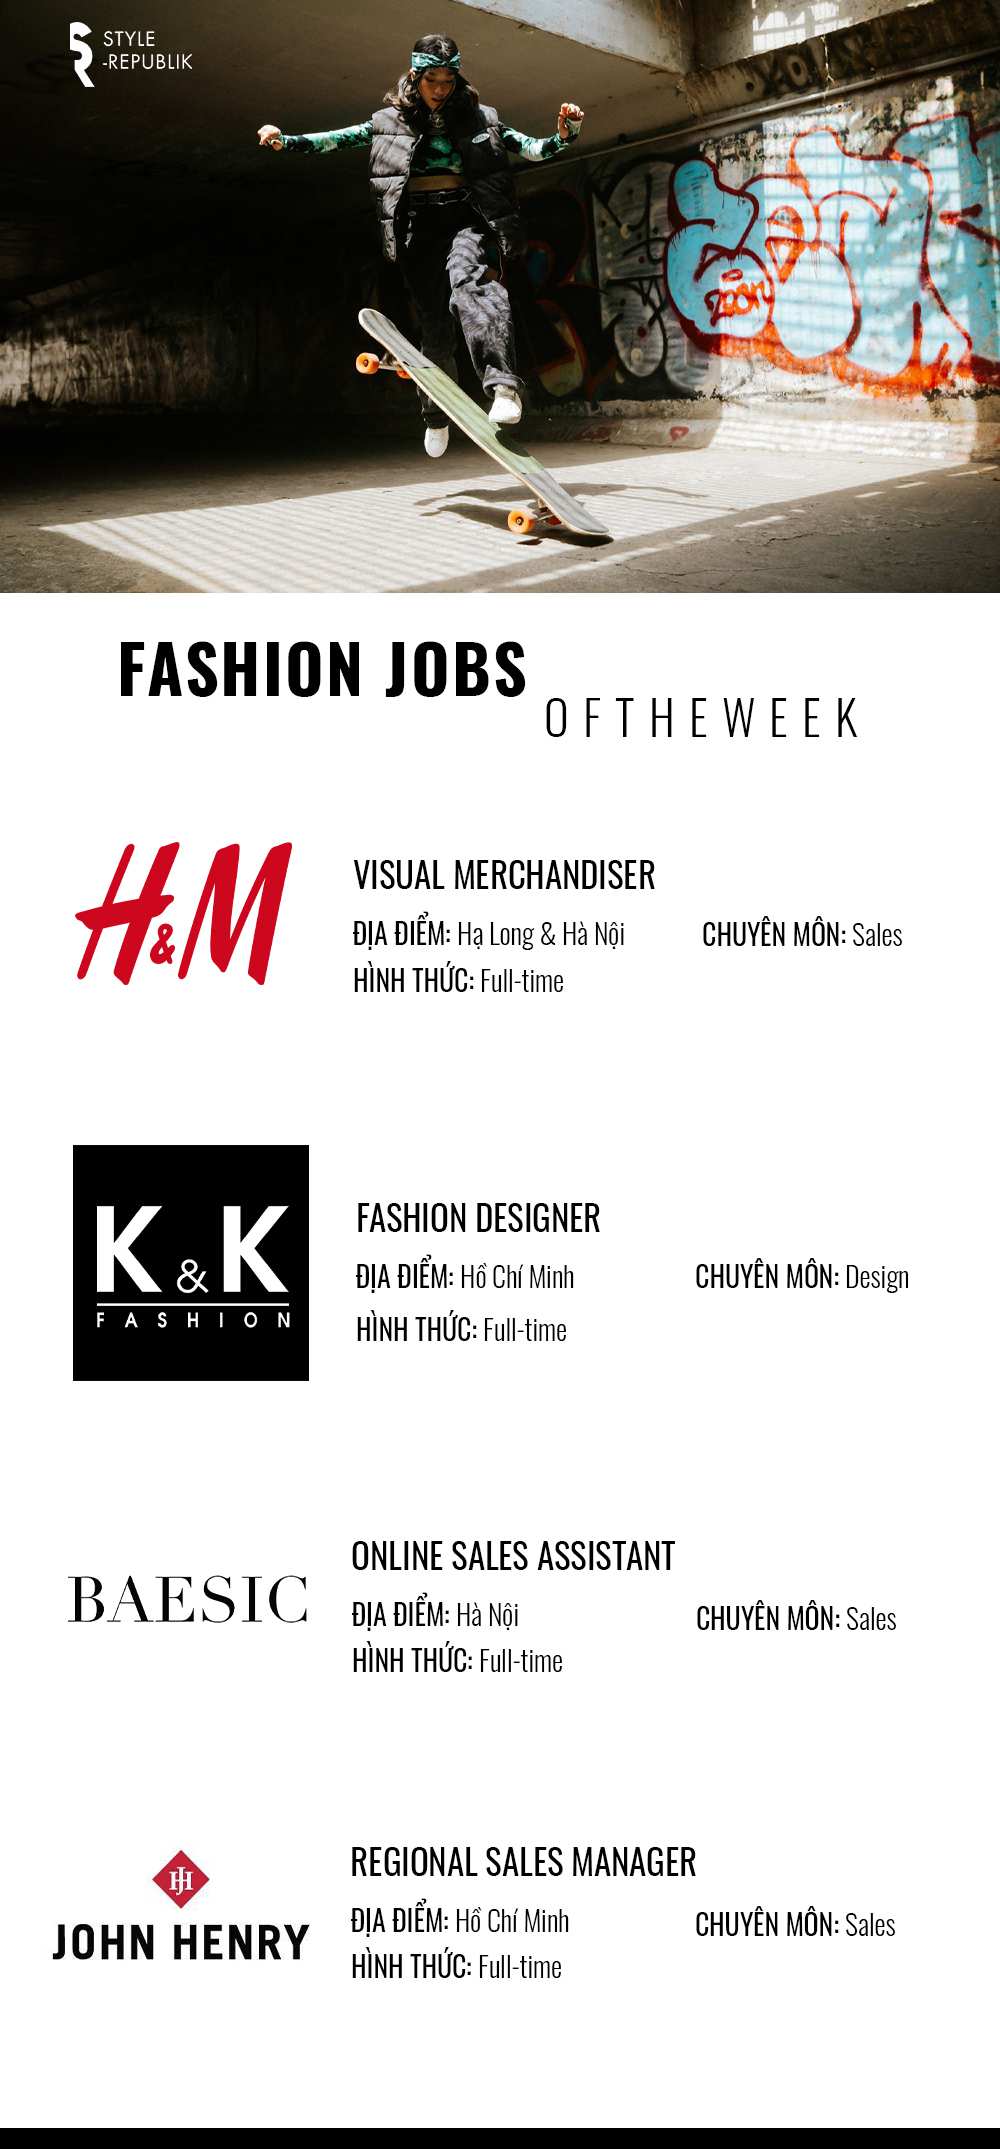 [Fashion Jobs of the Week] Việc làm thời trang tại H&M, K&K, John Henry và Baesic